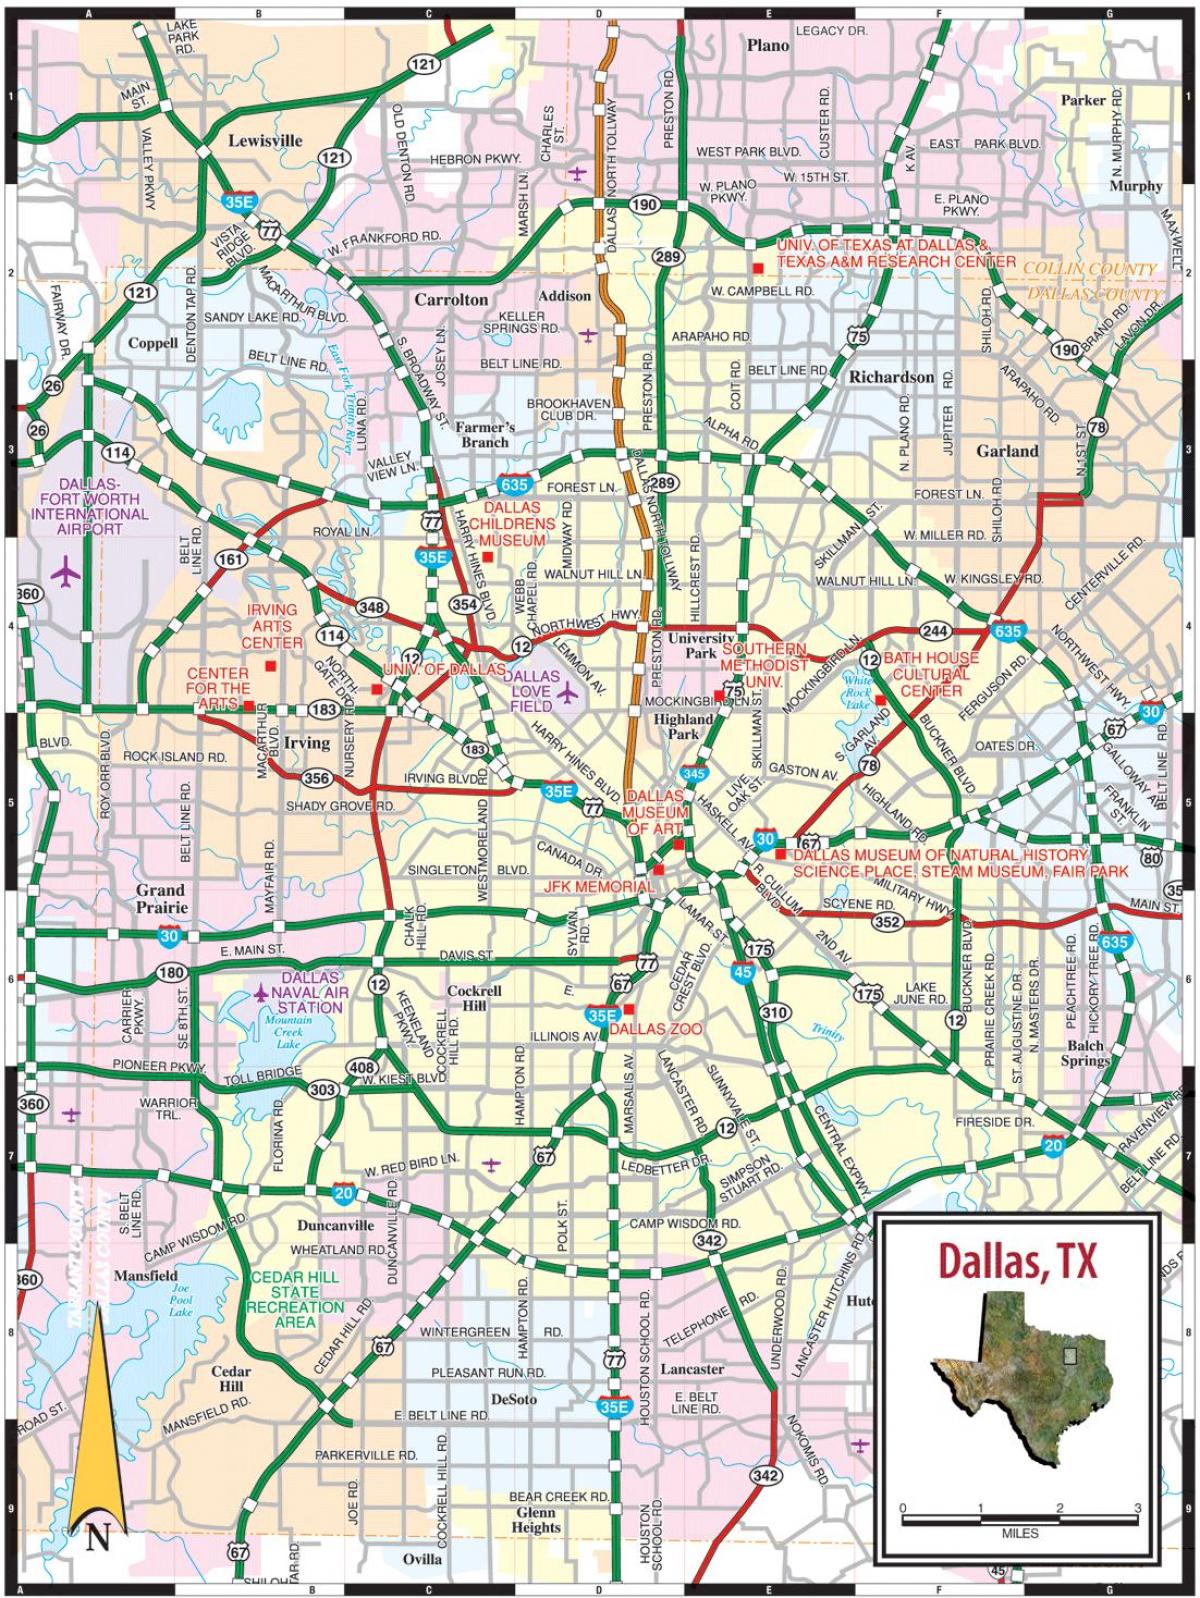 ڈلاس کے شہر کا نقشہ